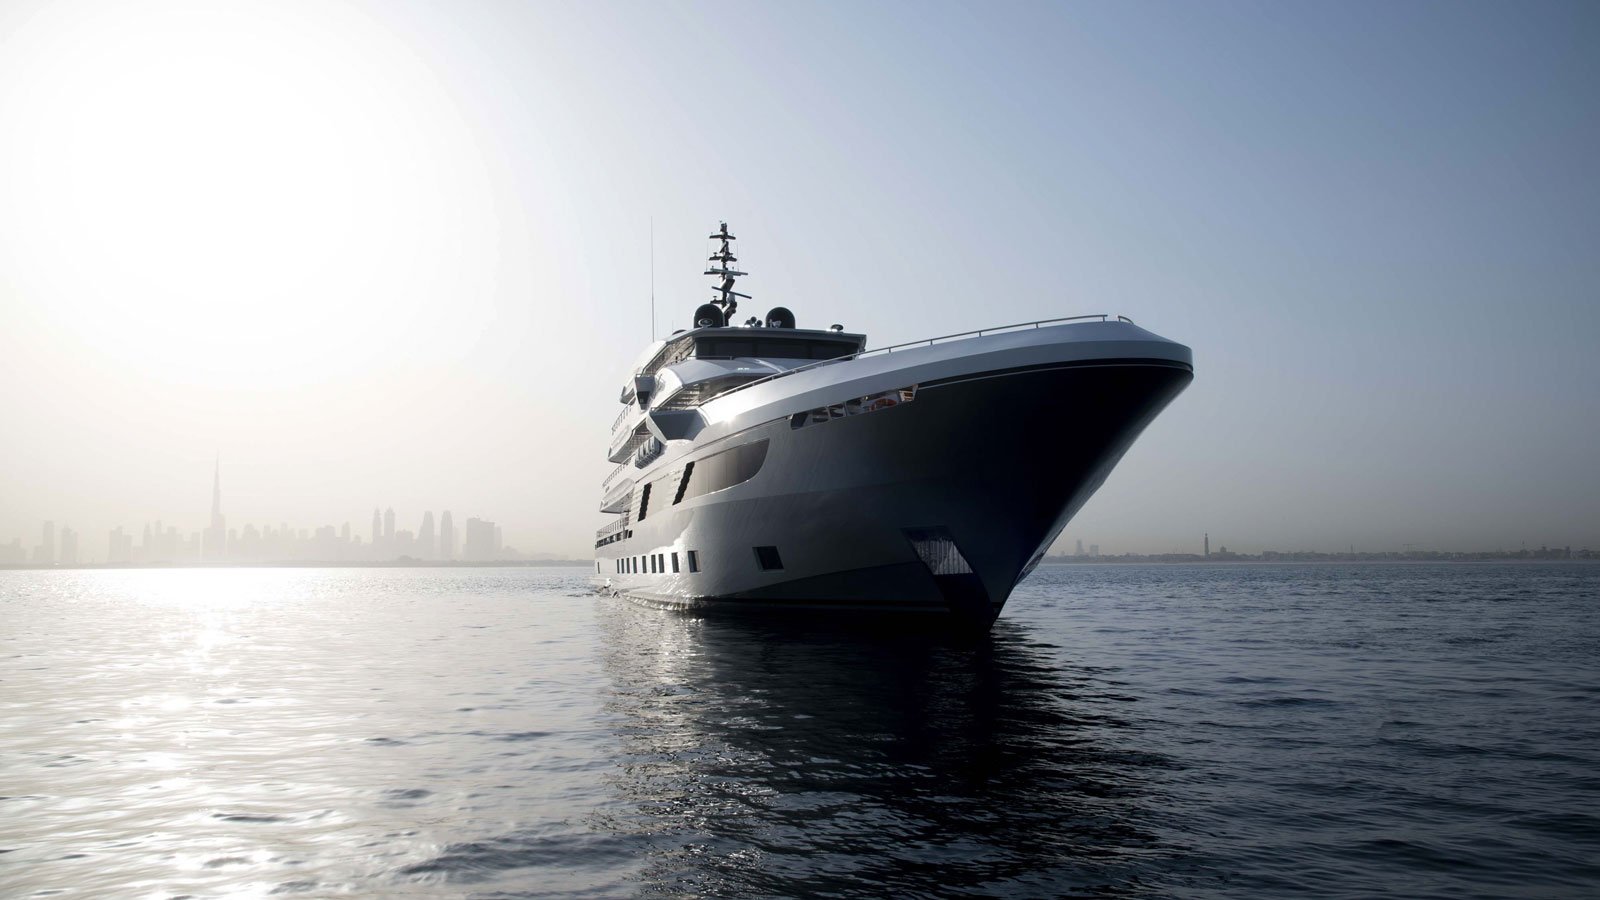 SERENITY MRF Yacht • Gulfcraft • 2021 • Owner Musabbeh Rashid Al Fattan